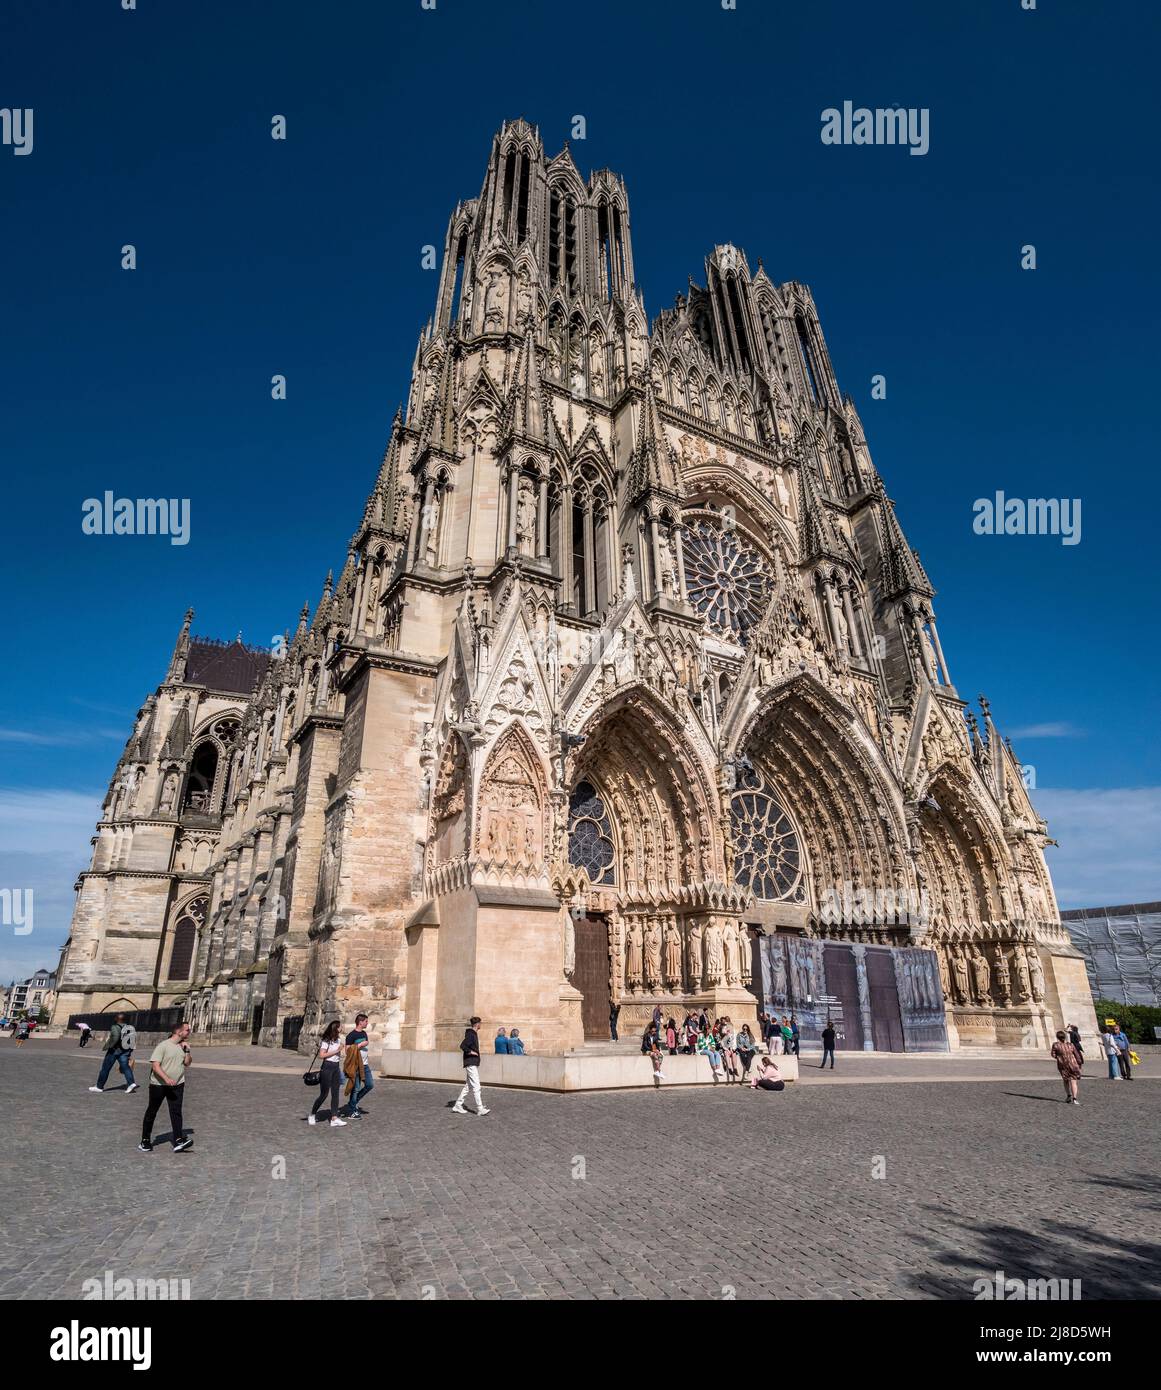 L'image est de la célèbre cathédrale notre Dame des Reims datant du 13th siècle, célèbre pour son association avec Jeanne d'Arc, qui surplombe la place de la ville. Banque D'Images